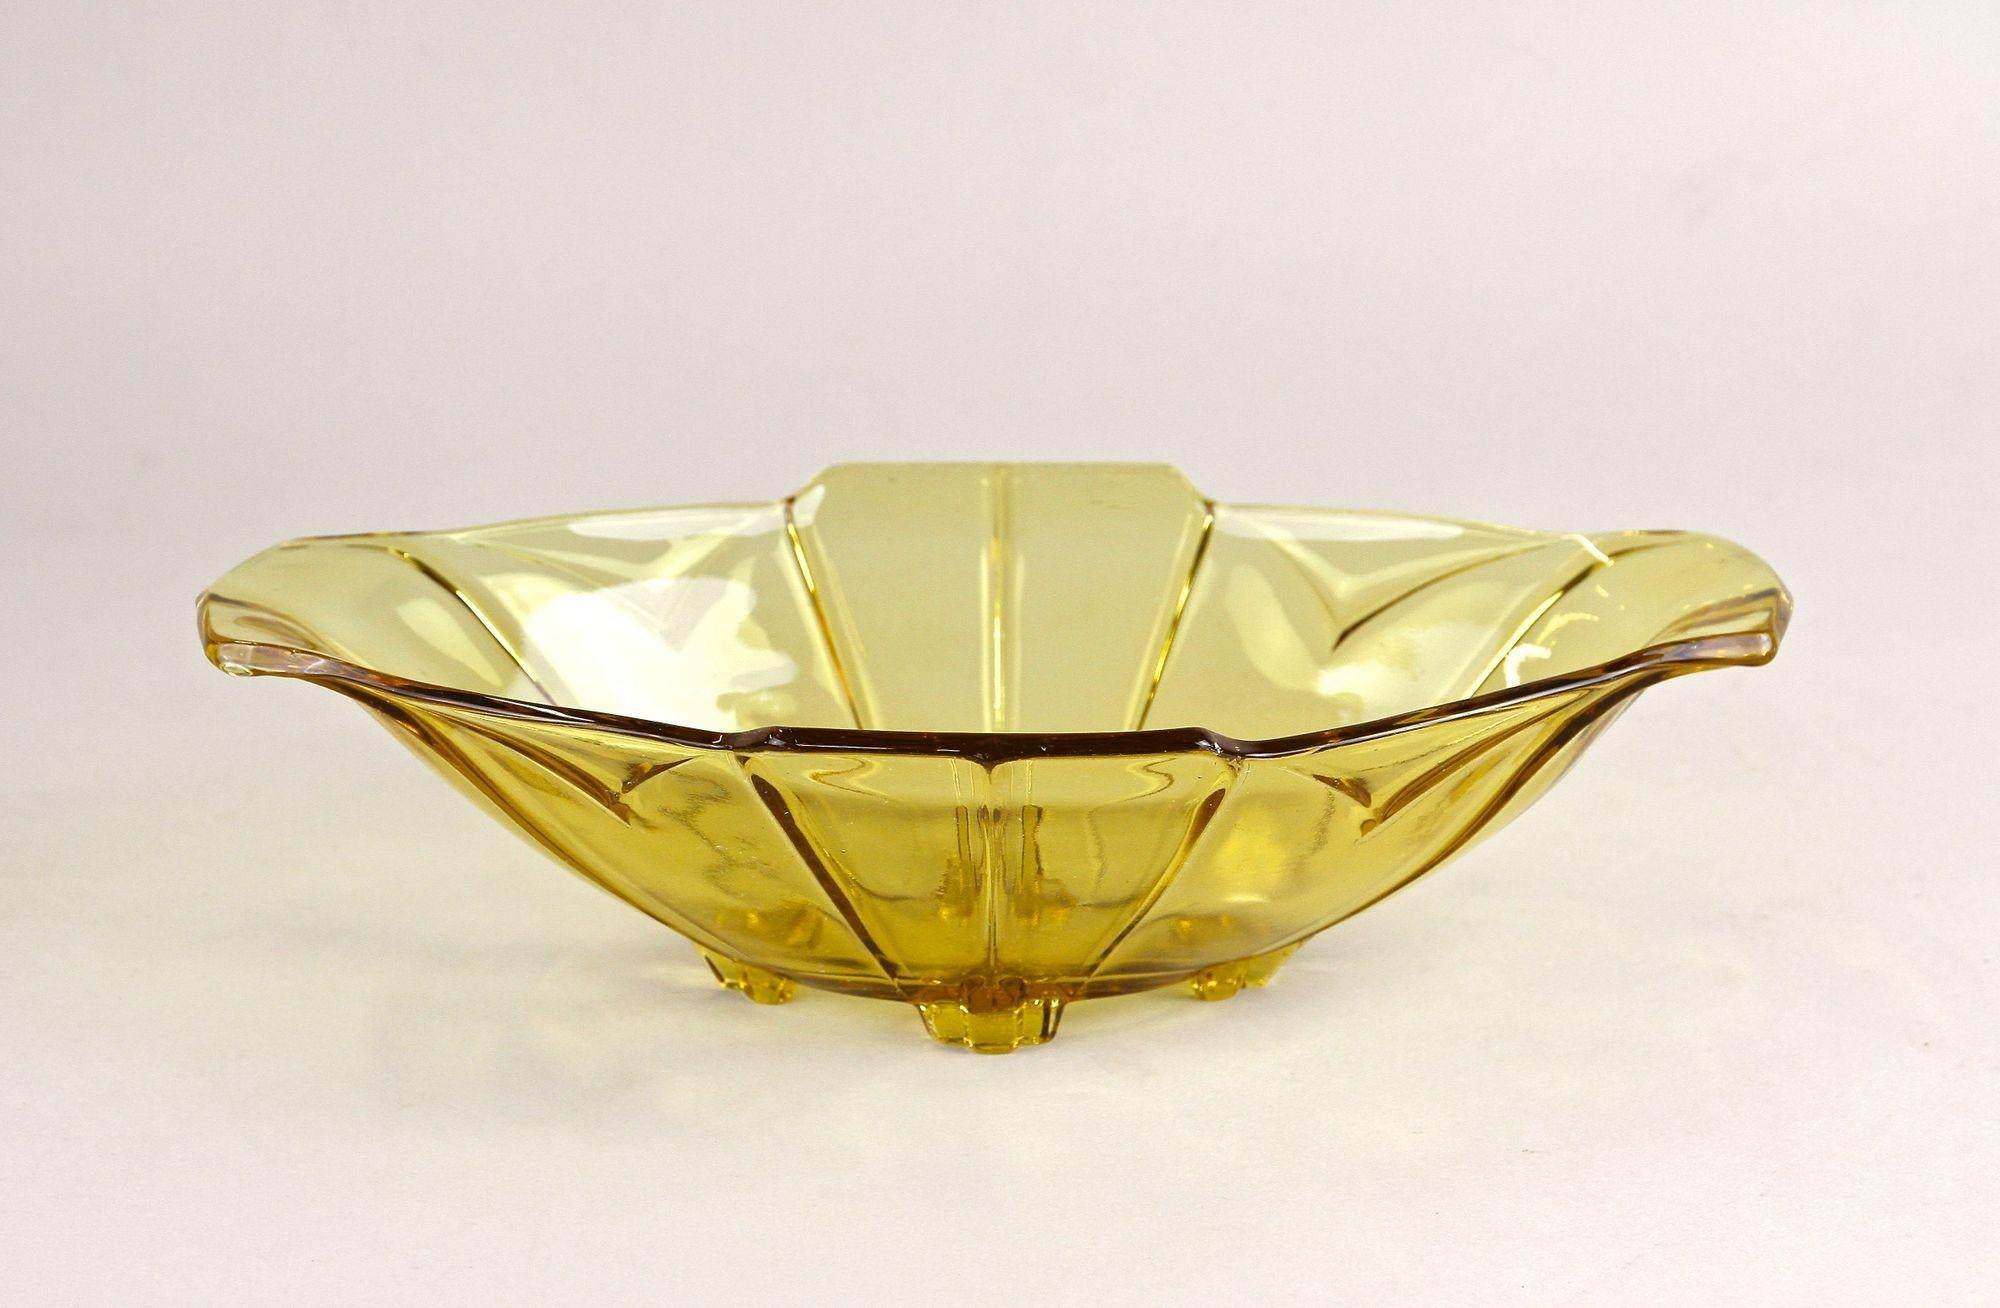 Wunderschöne bernsteinfarbene Art Deco Glas Jardiniere oder Glasschale aus der Zeit um 1920 in Österreich. In einem fantastischen gelb-braunen Farbton beeindruckt dieses sehr dekorative Glasobjekt mit einer schönen Form, die von einzigartigen